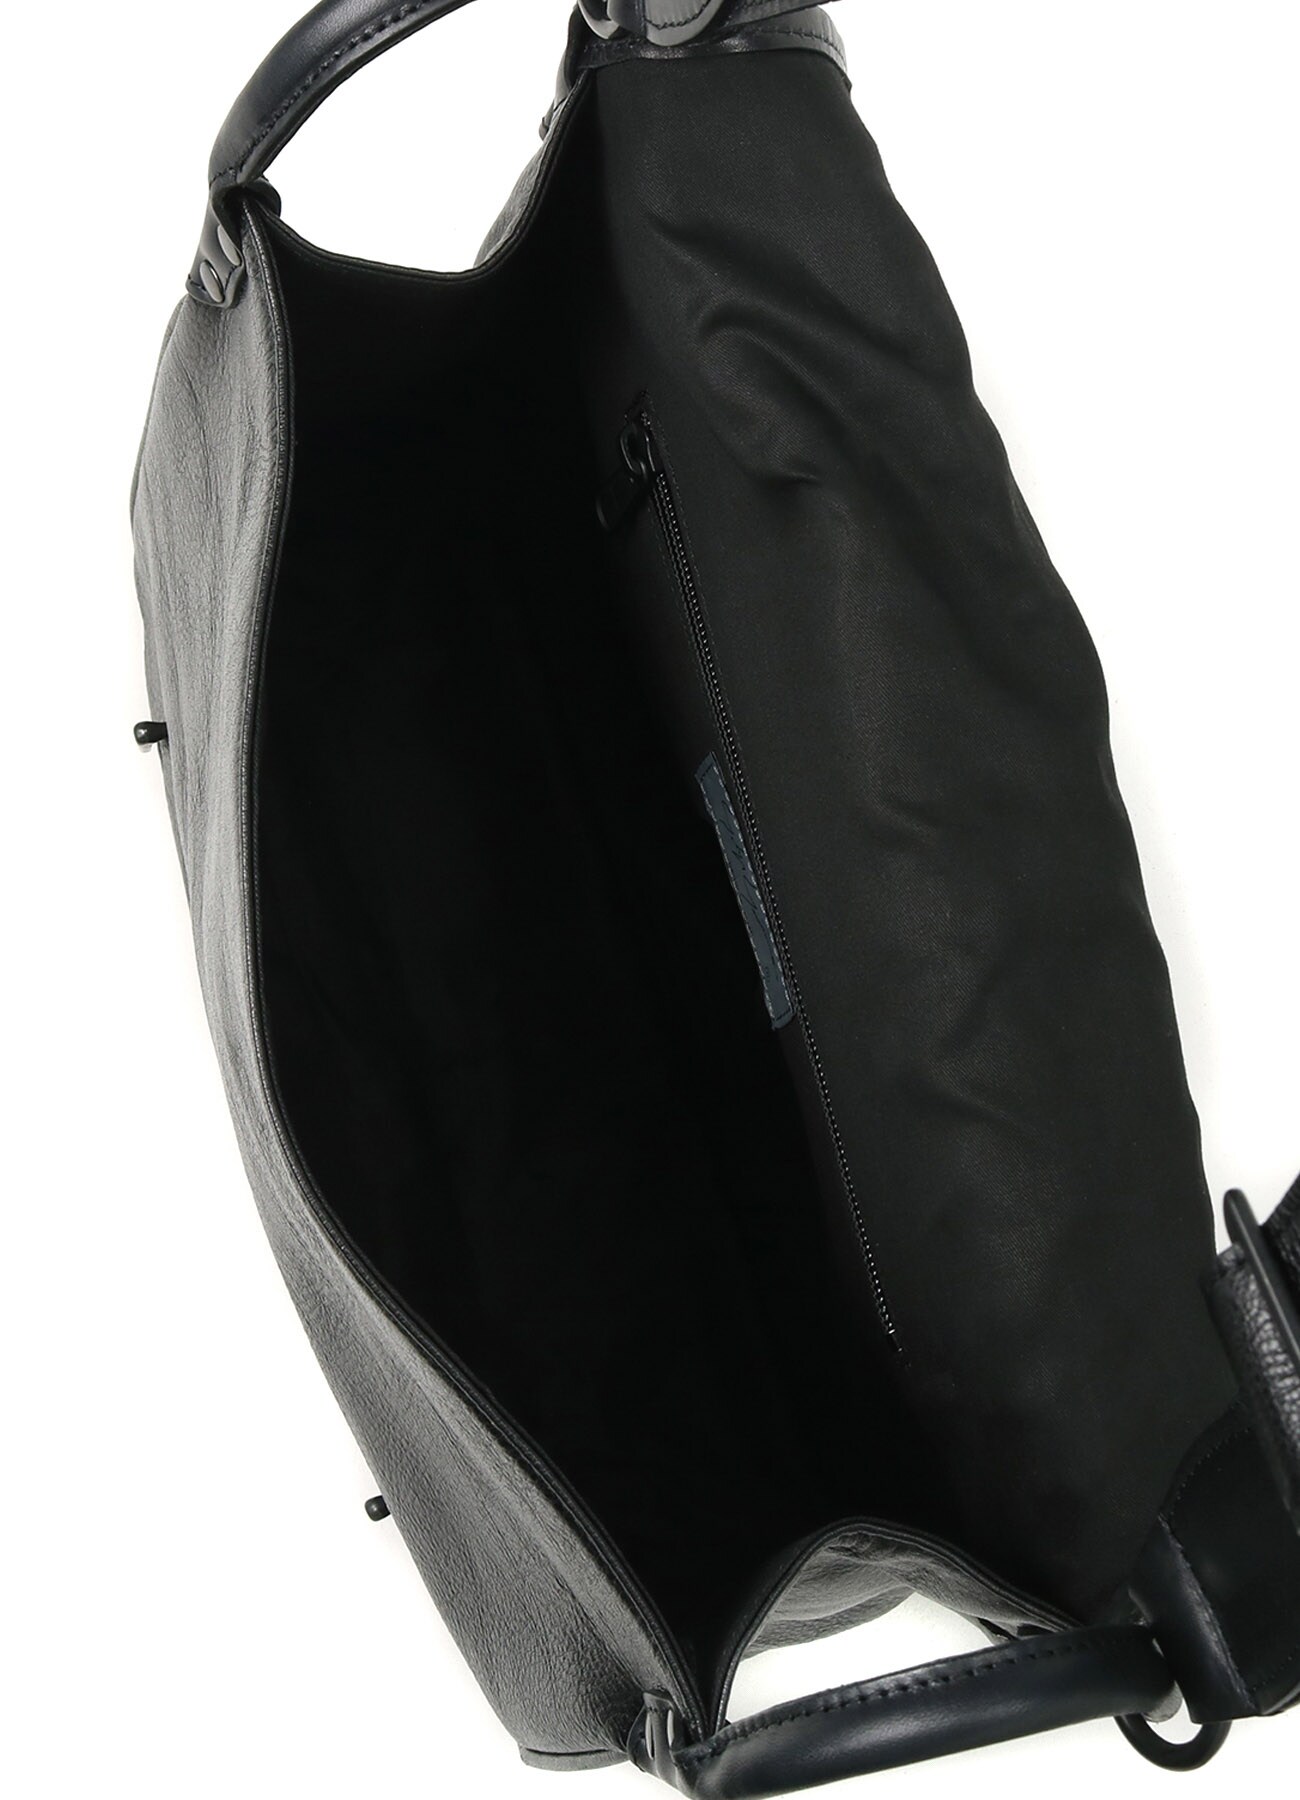 Black leather flap shoulder bag